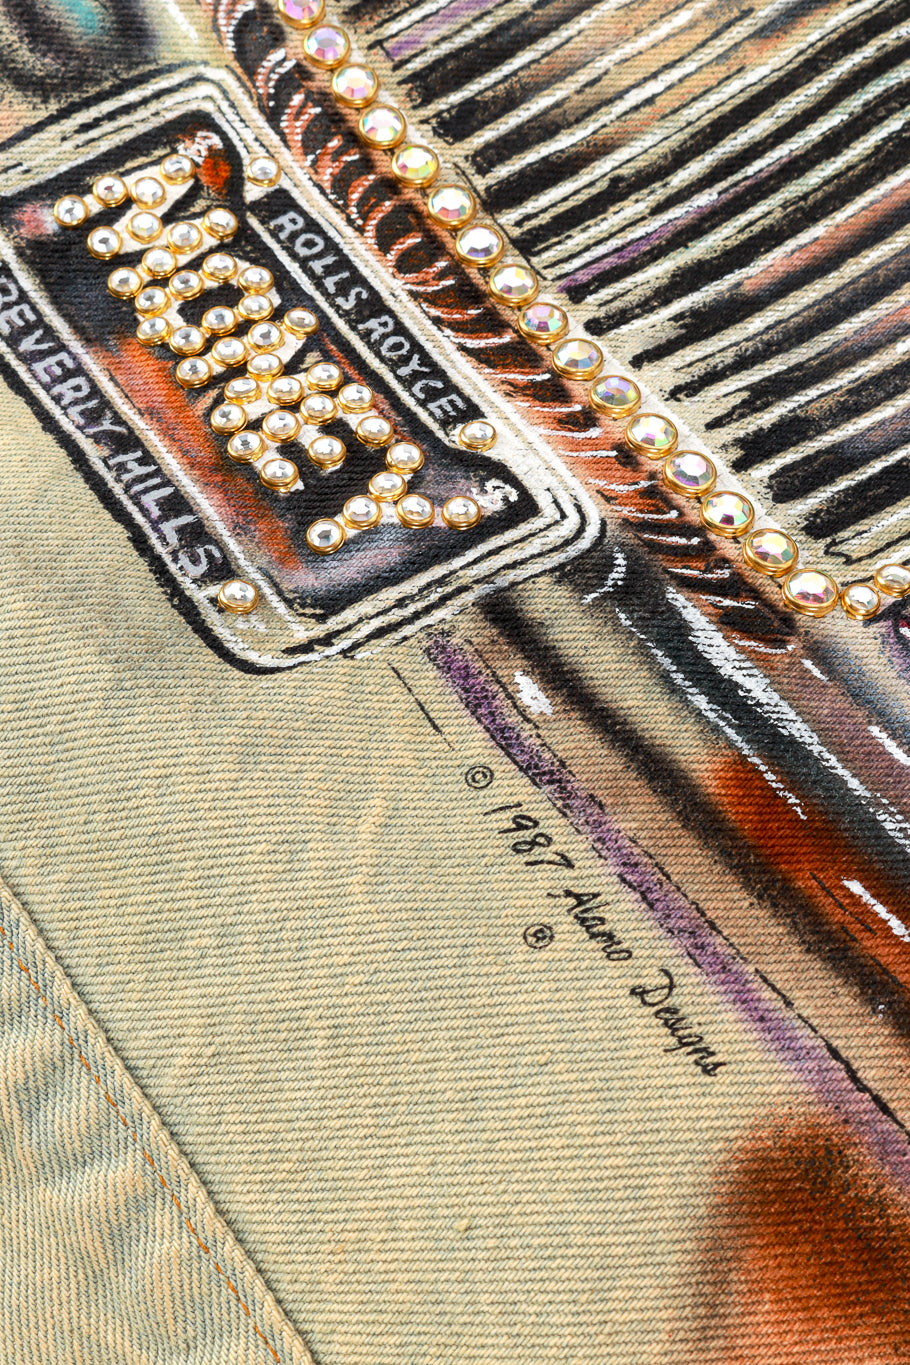 Vintage Tony Alamo Beverly Hills Jacket signature closeup @recess la